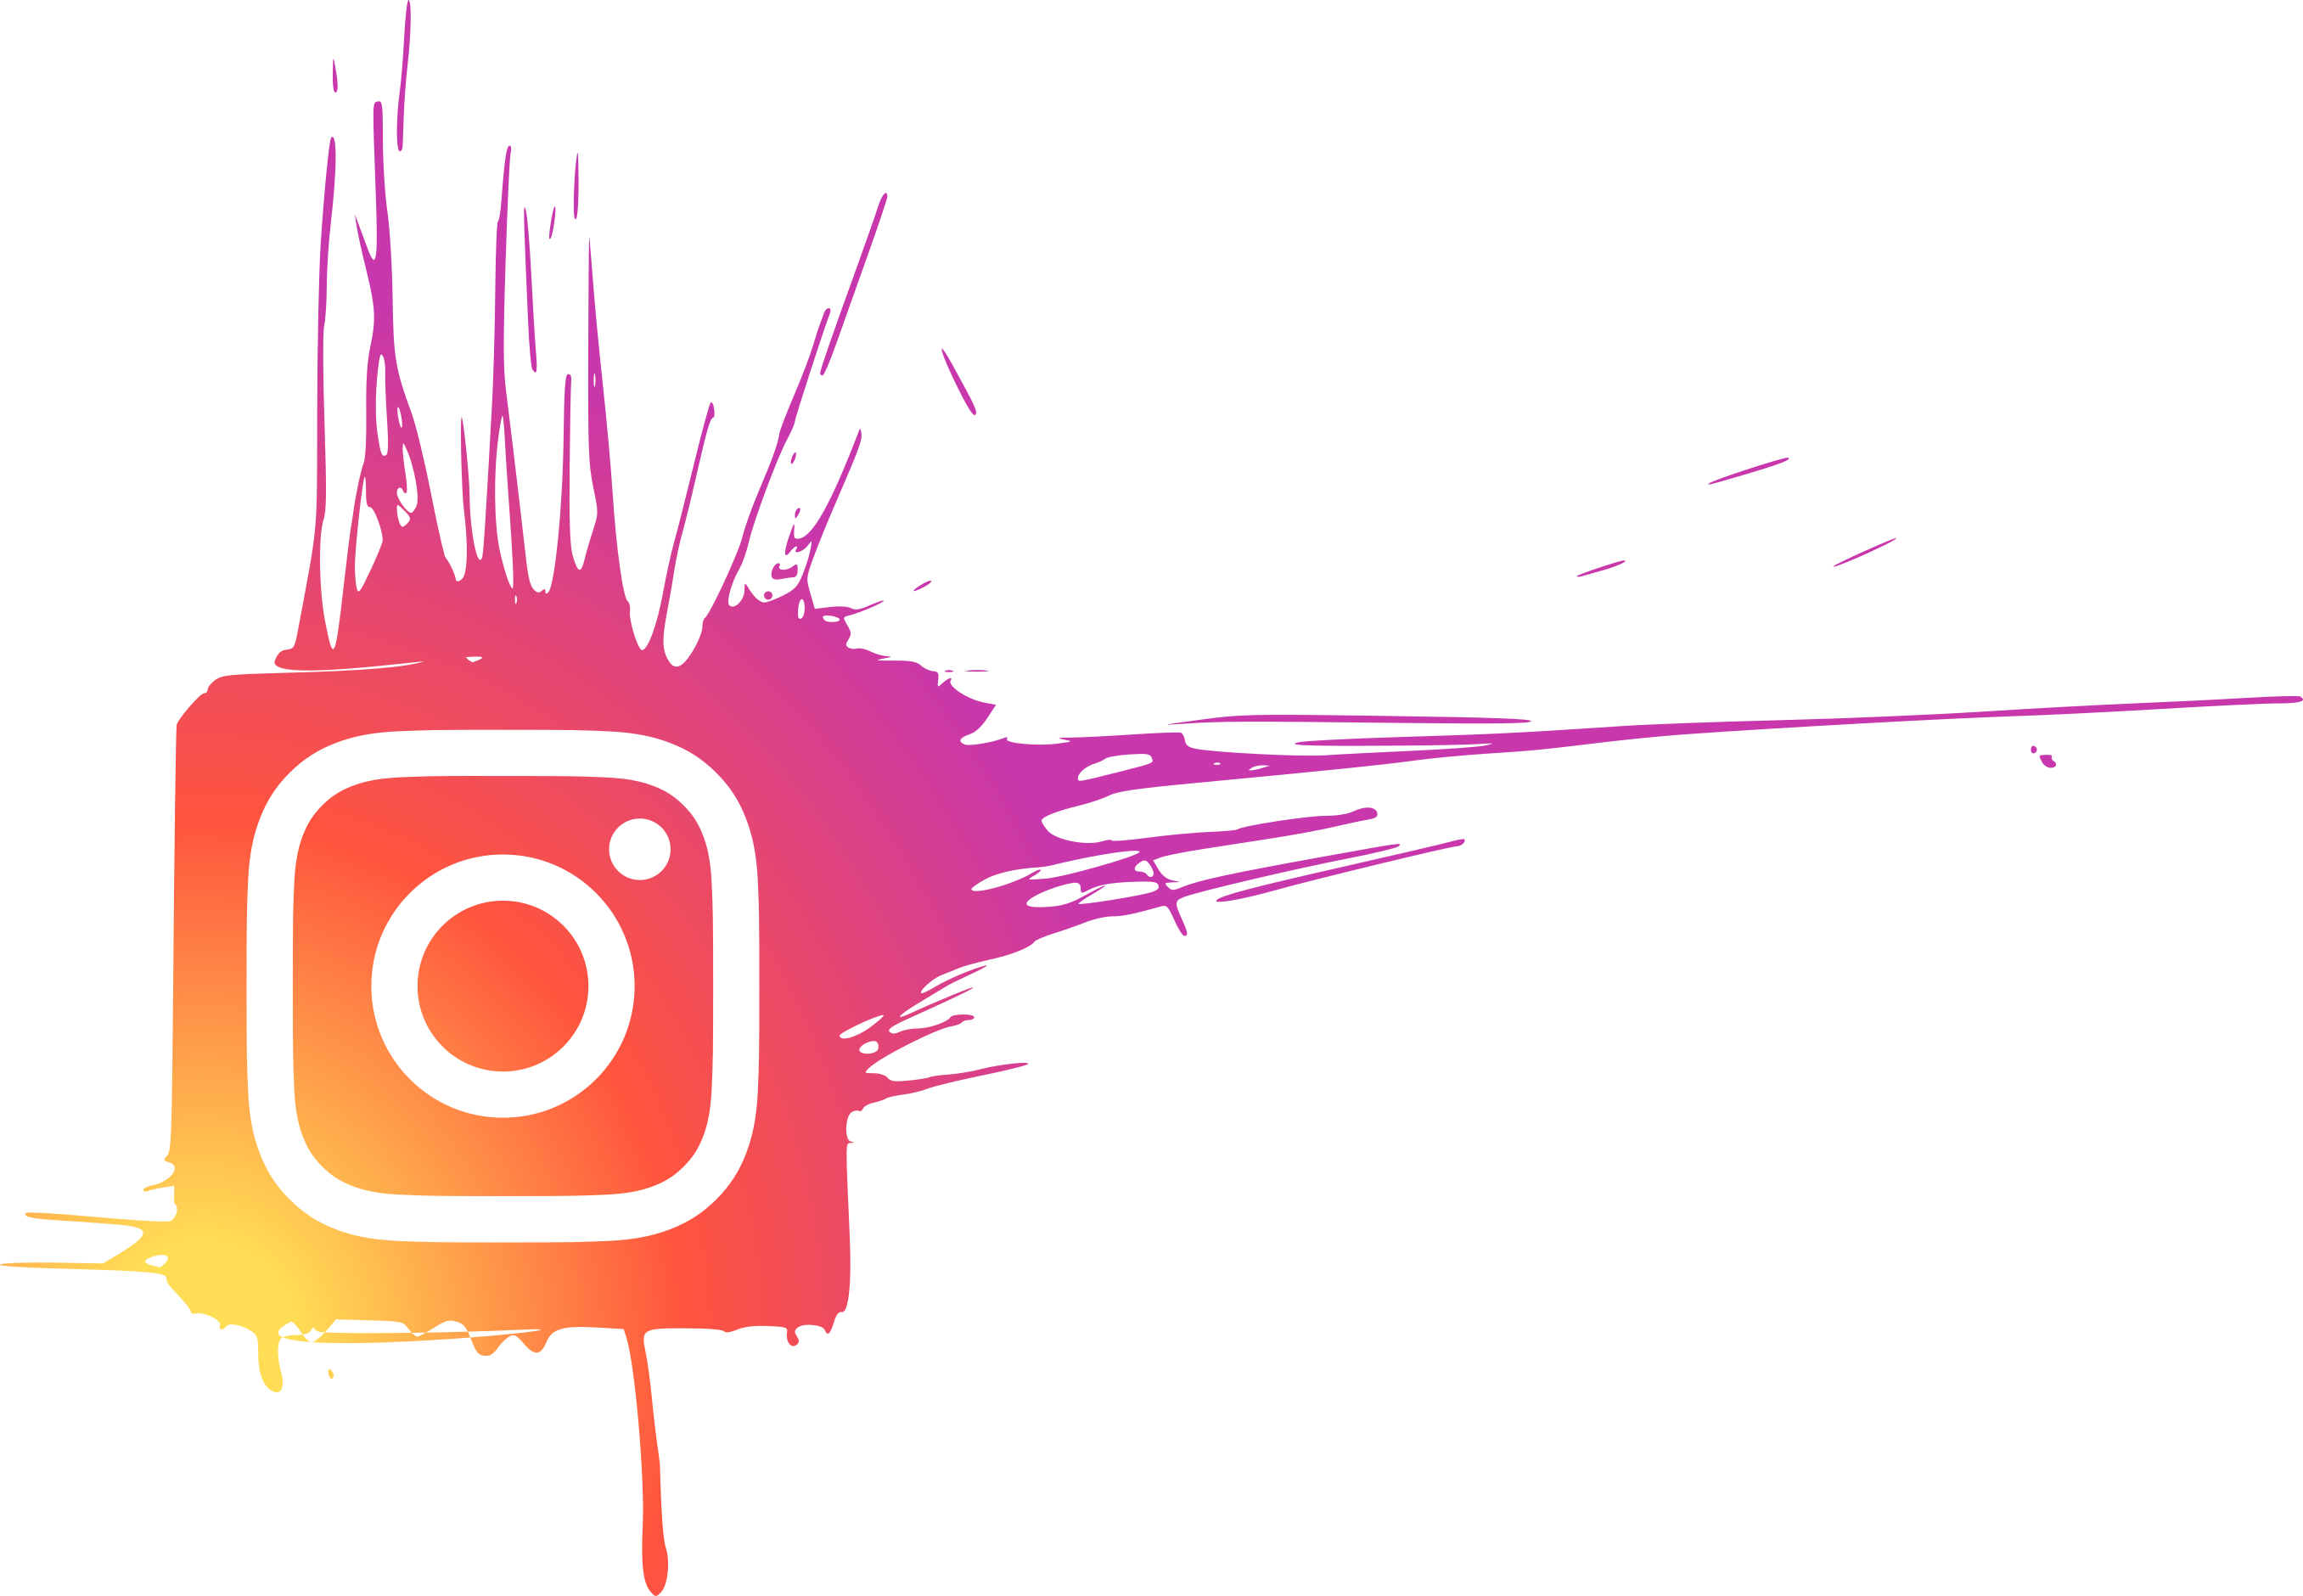 Instagram logo splatter mới cập nhật năm 2024 sẽ là một điểm nhấn đáng chú ý trong trang cá nhân của bạn. Với kiểu thiết kế mới lạ, bạn có thể tạo nên những hình ảnh tạo nên bất ngờ và độc đáo, thu hút được nhiều người quan tâm trên mạng xã hội.